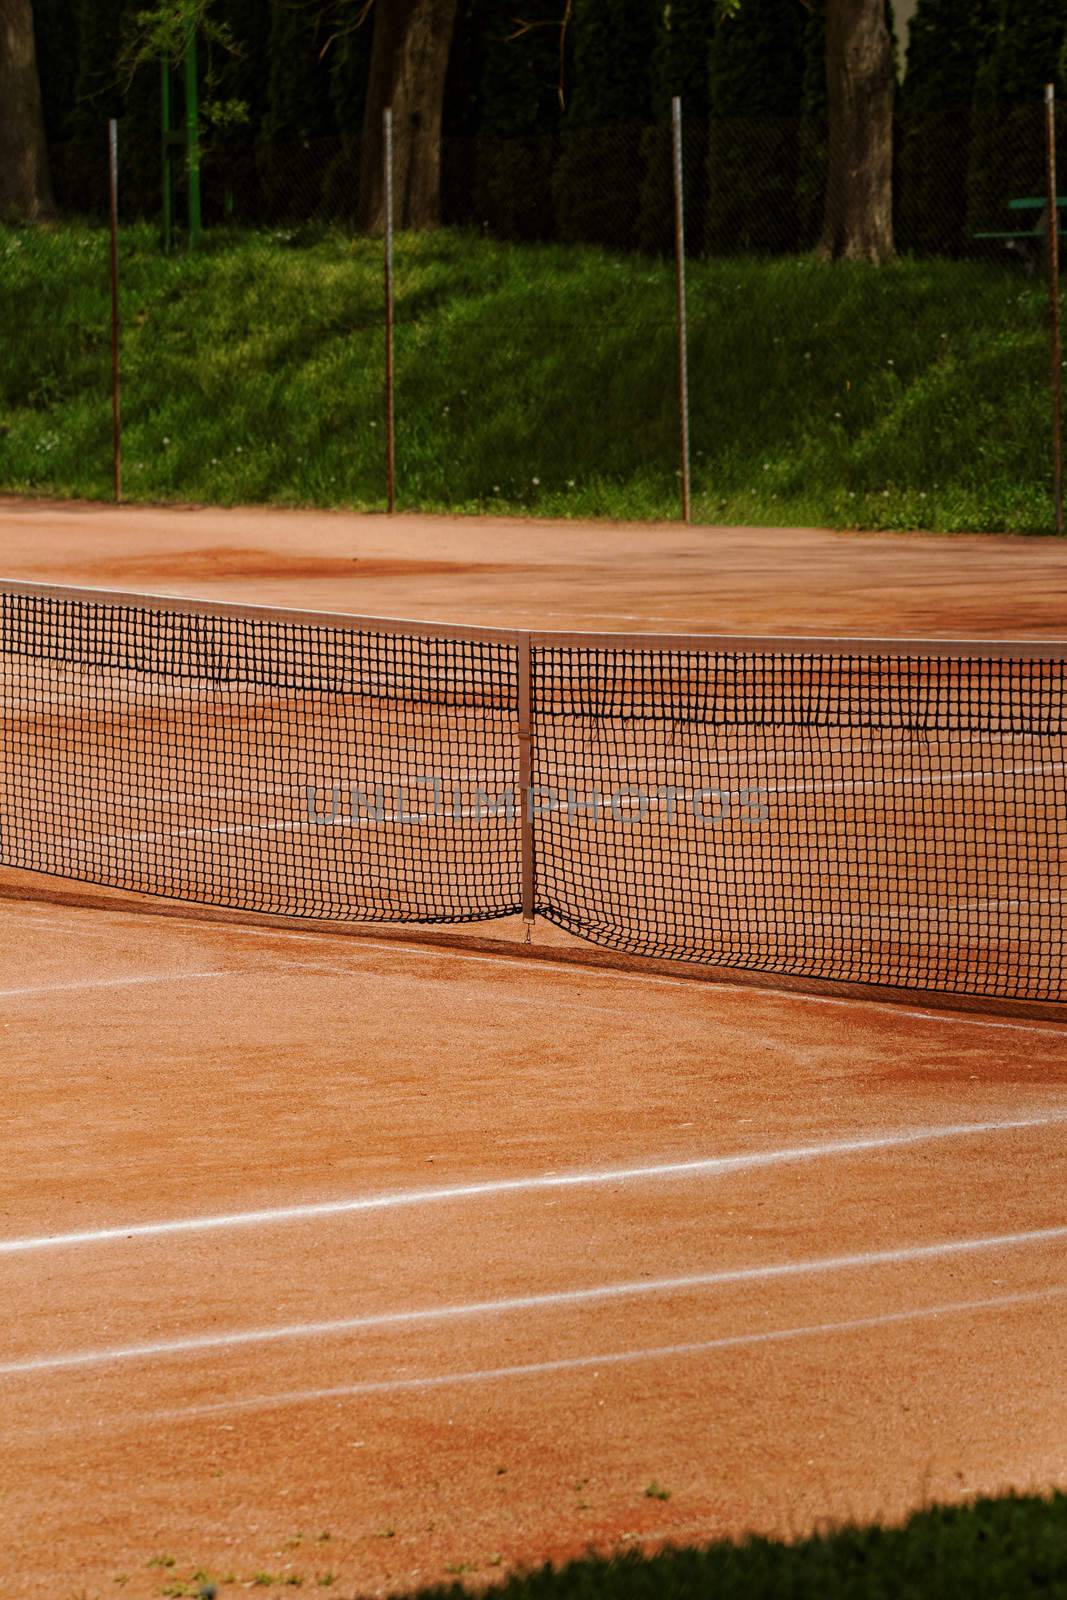 tennis court by NagyDodo